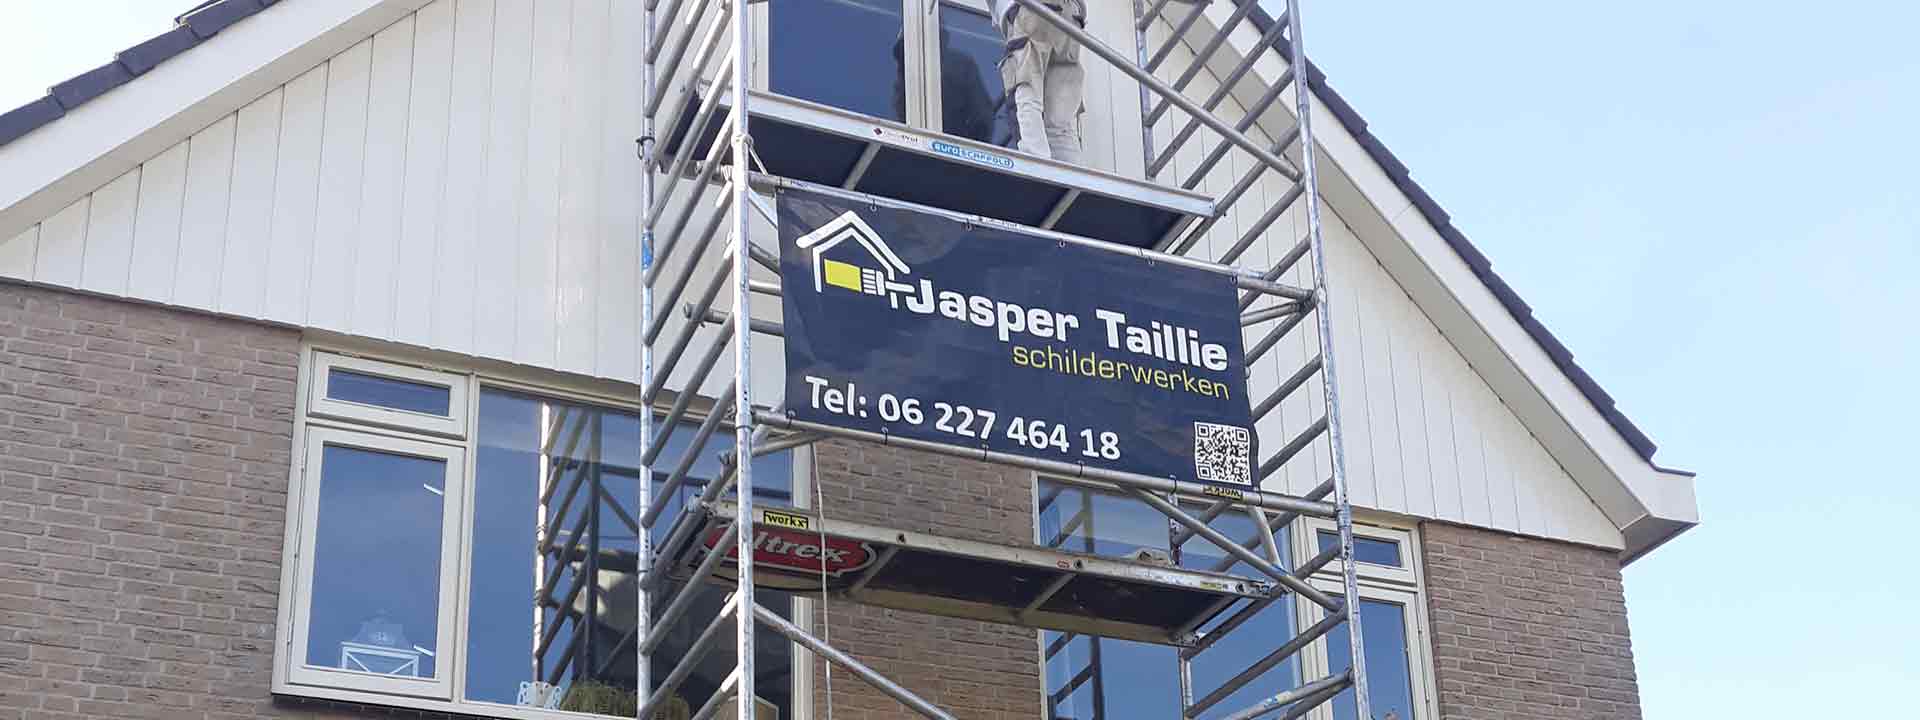 Jasper Taillie Schilderwerken Leiderdorp